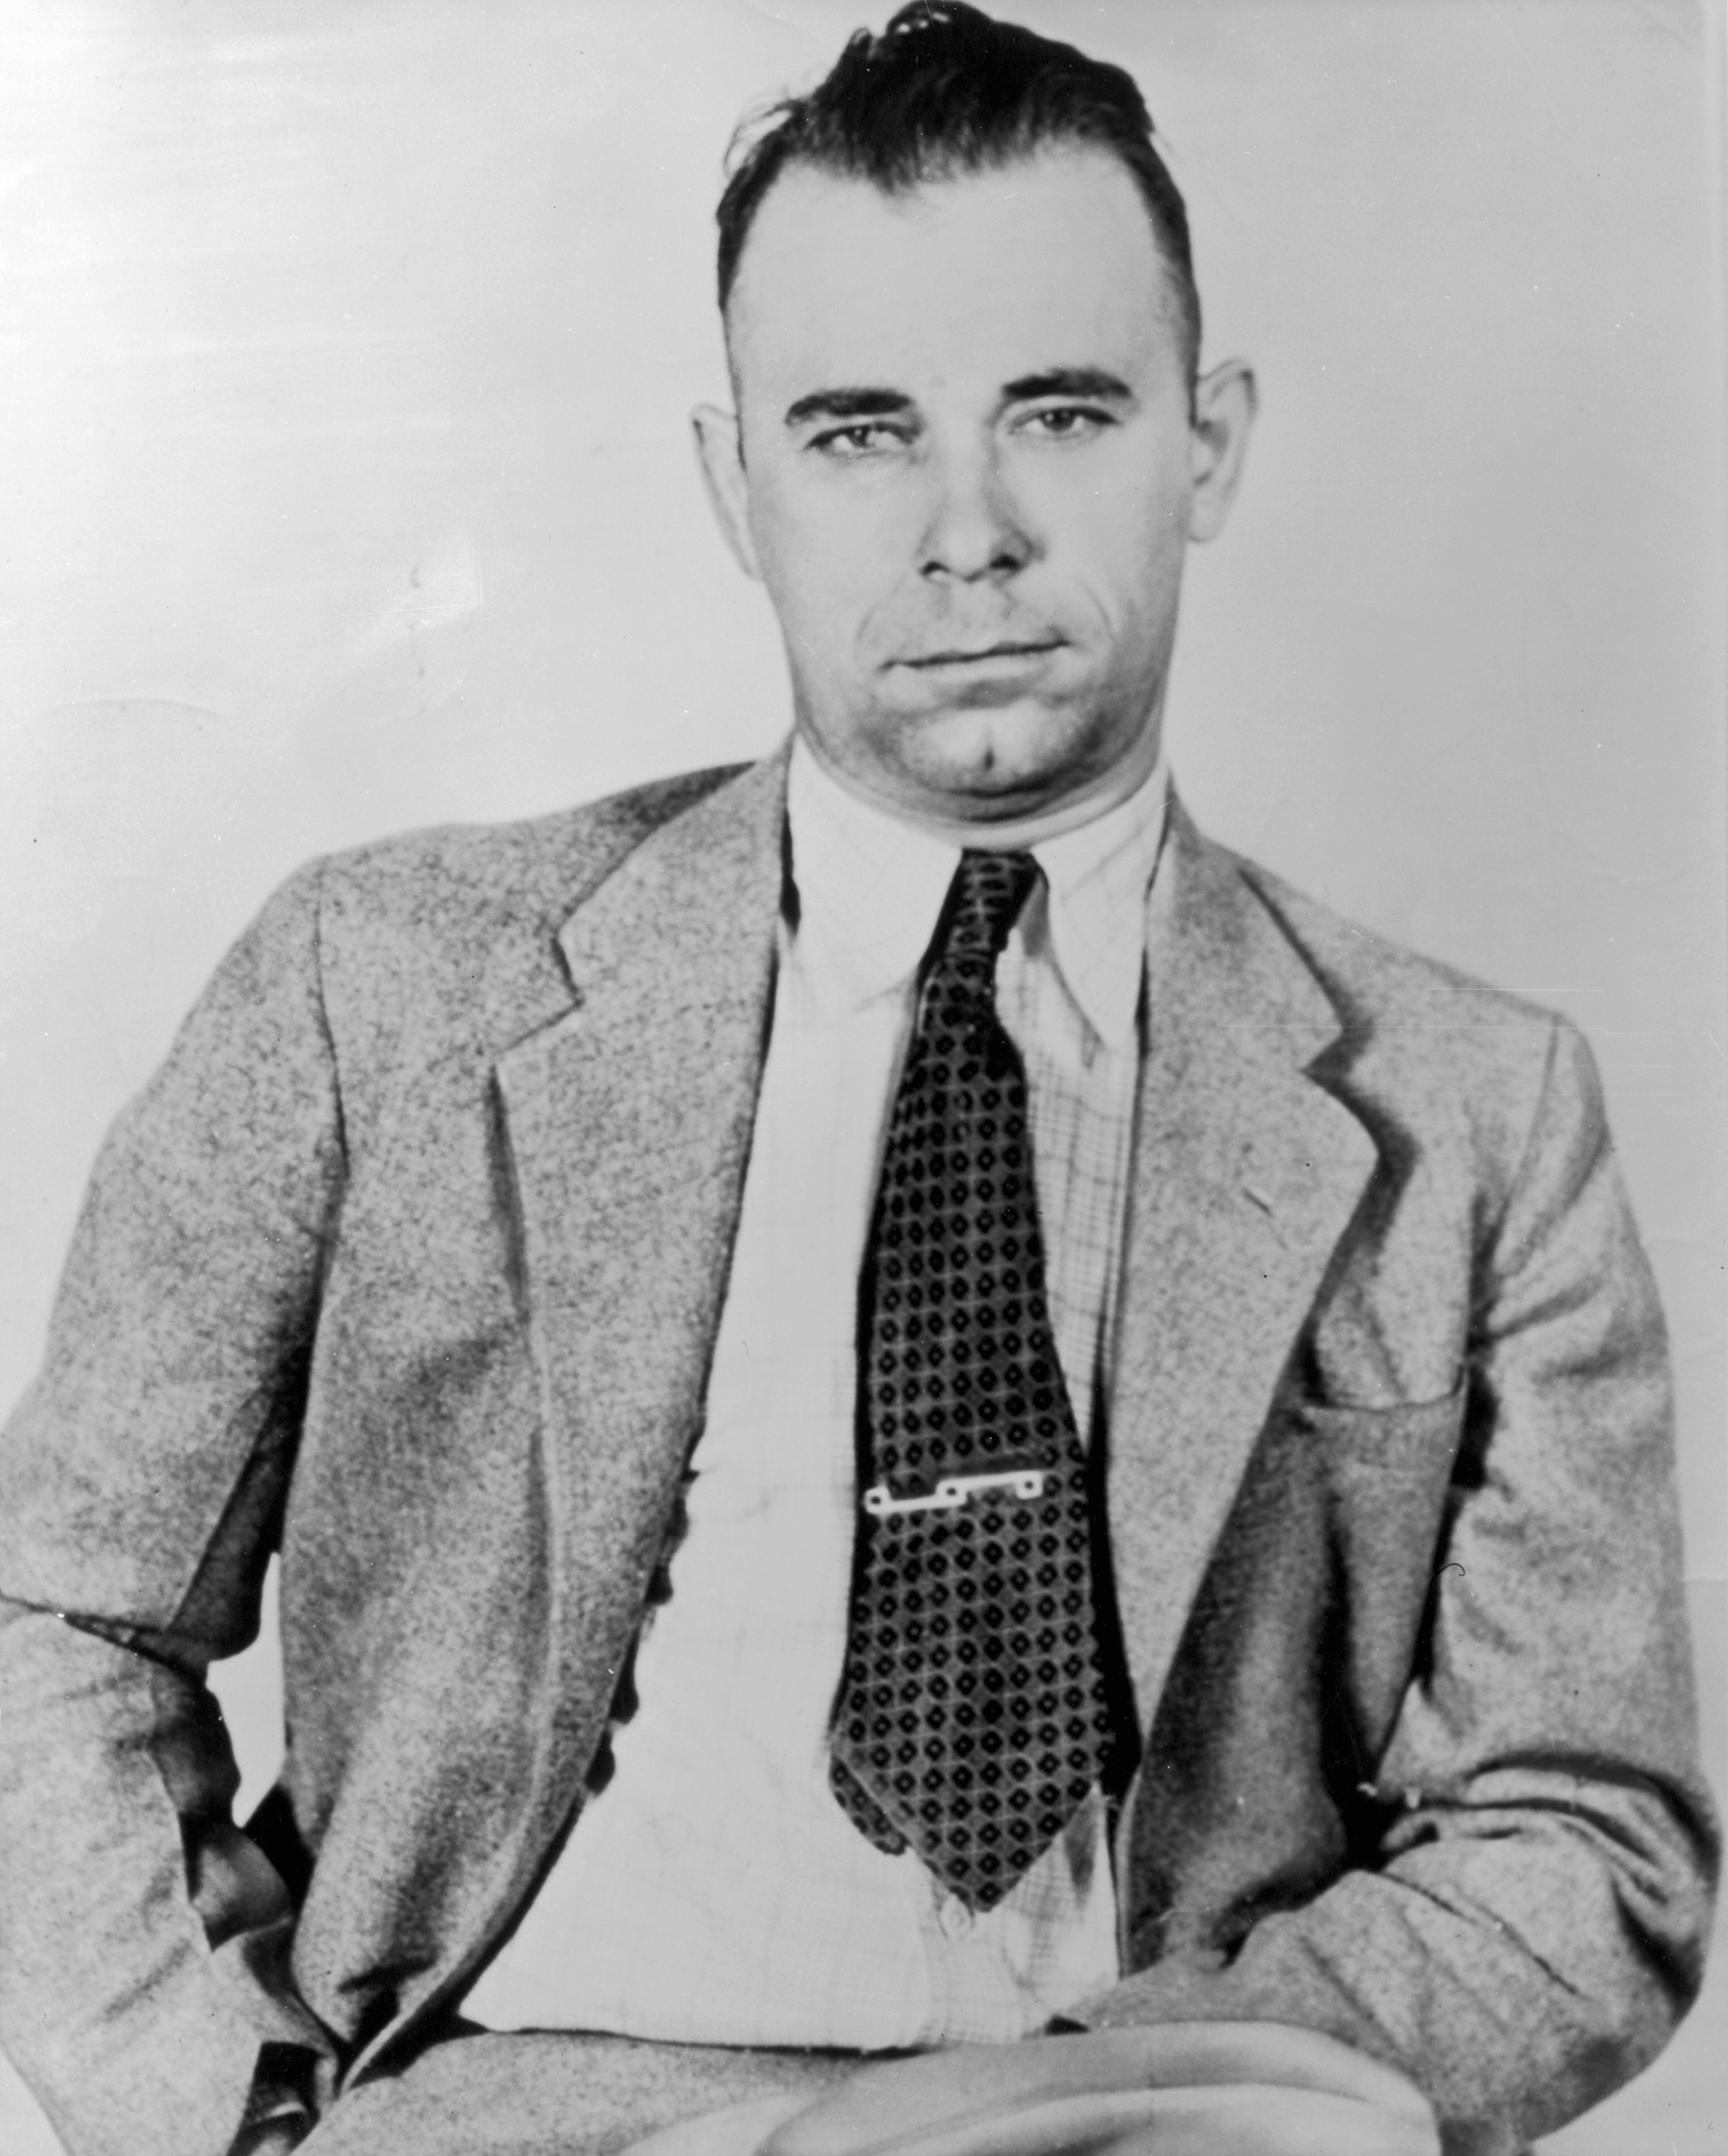 Retrato del líder de una banda criminal estadounidense y ladrón de bancos John Dillinger con chaqueta y corbata. (American Stock / Getty Images)